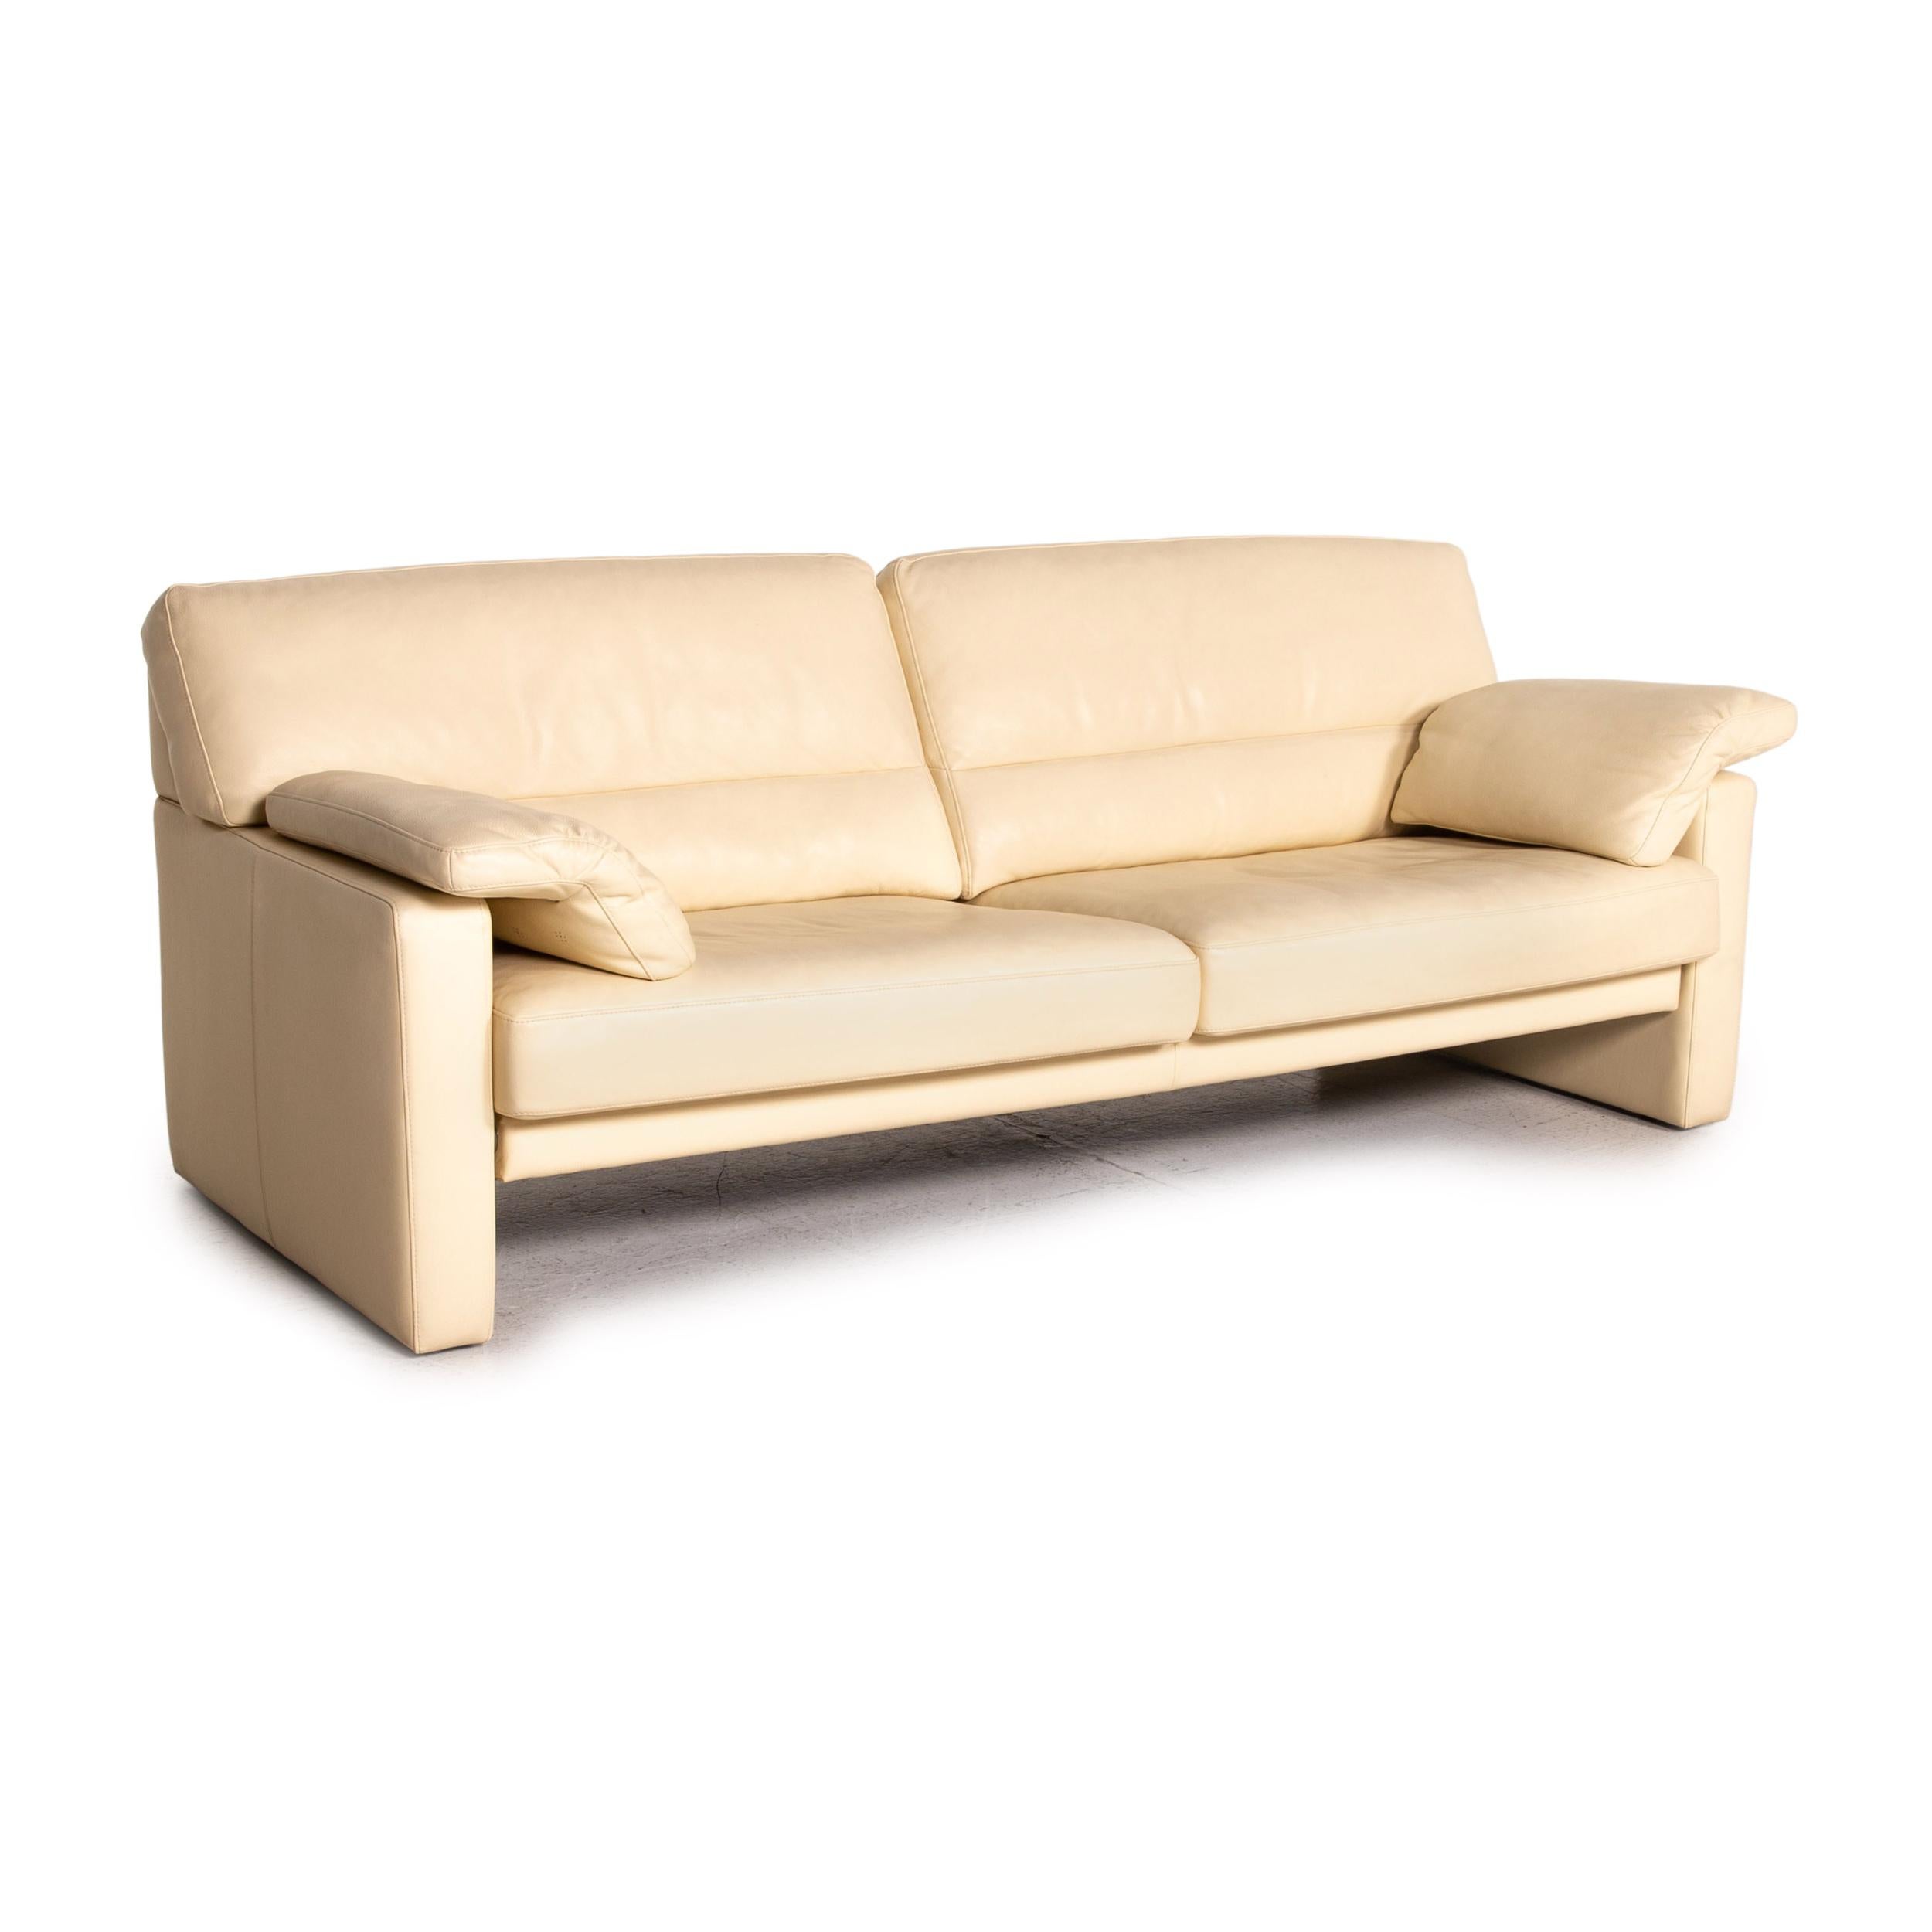 Contemporary Bielefelder Werkstätten Leather Sofa Cream Three-Seater Couch For Sale